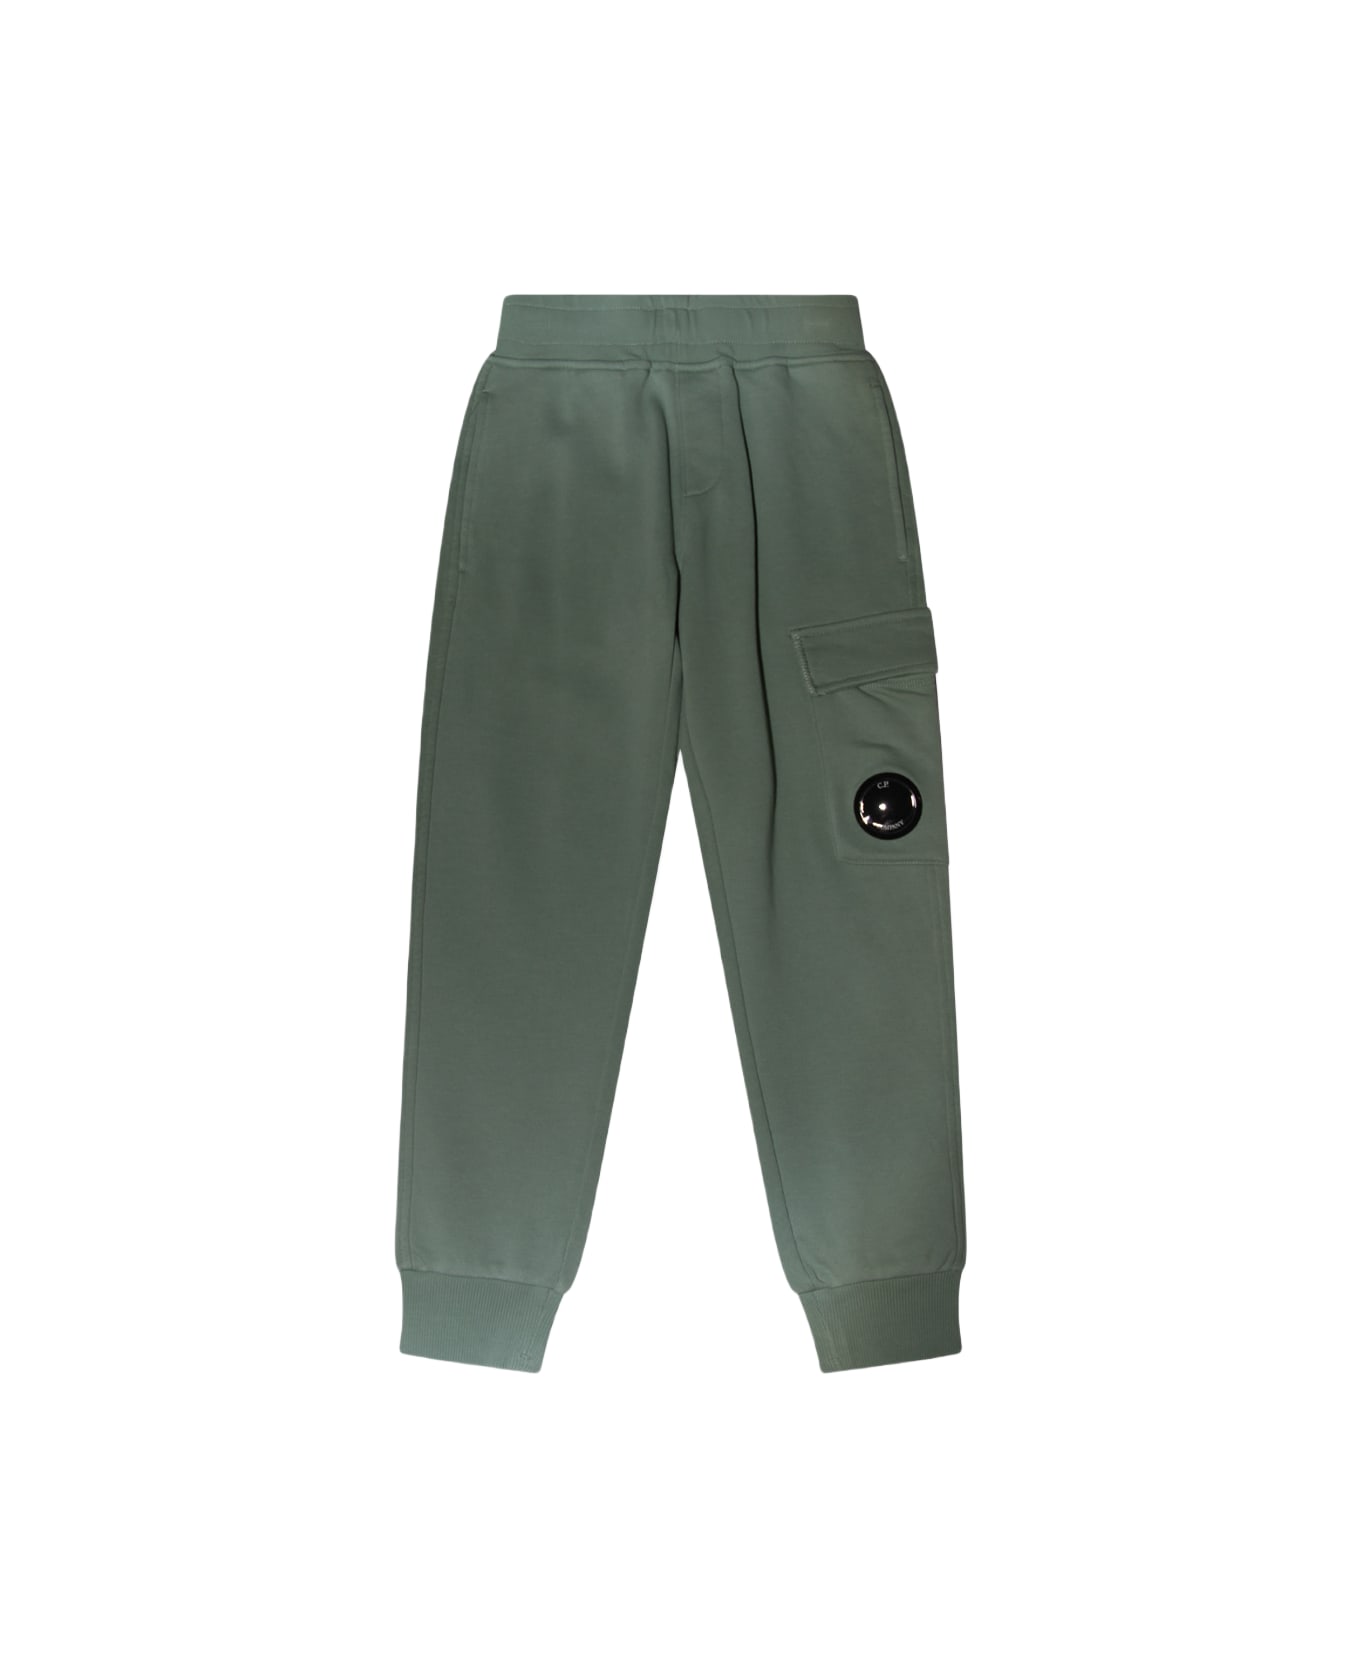 C.P. Company Green Cotton Pants - Green